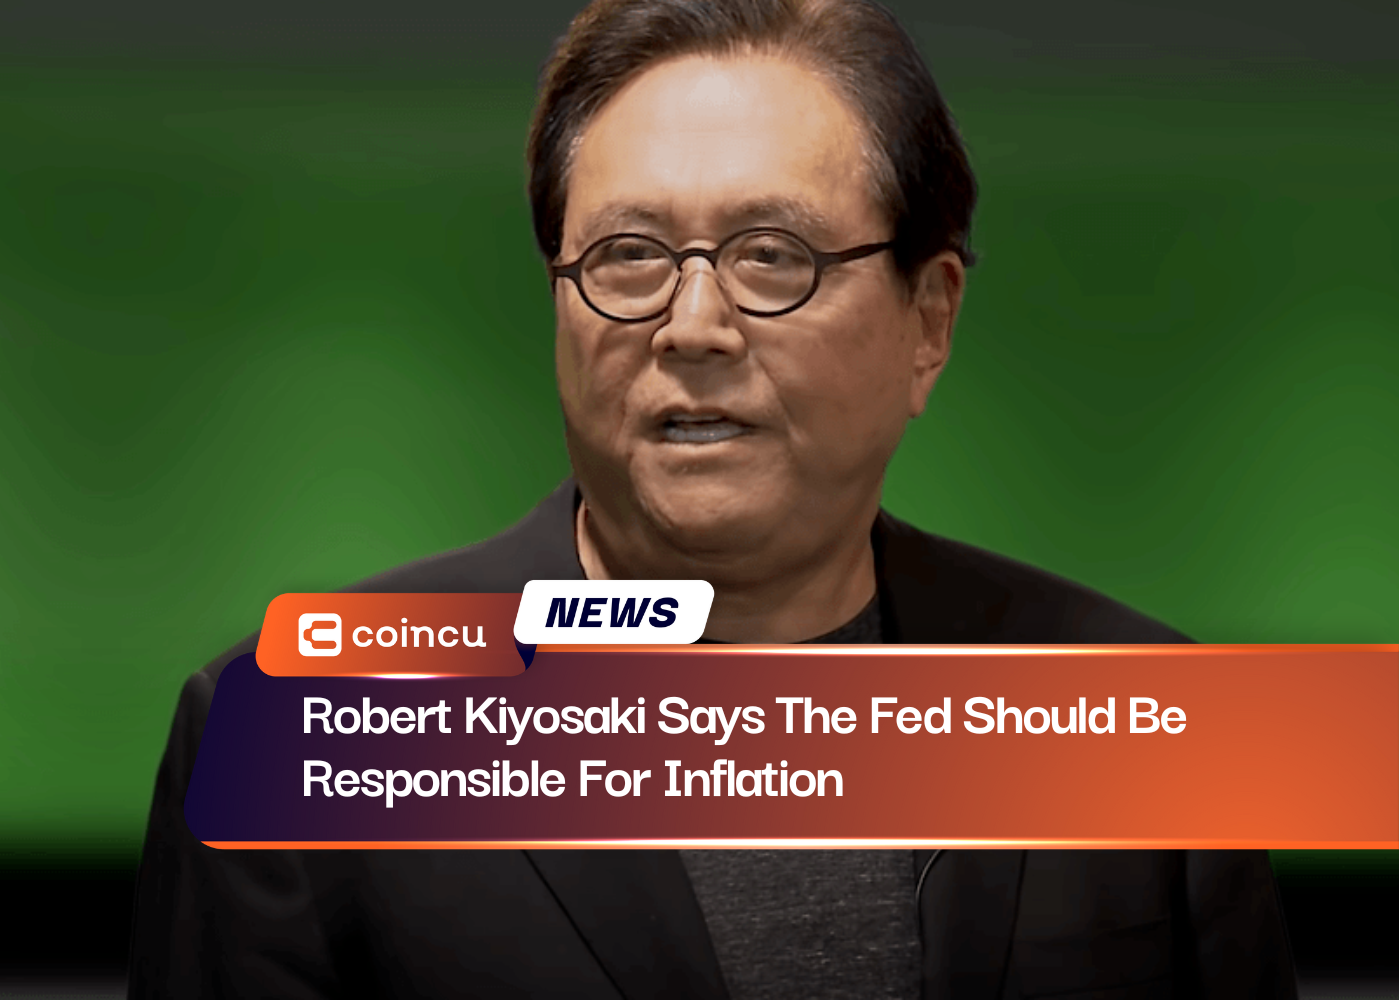 Robert Kiyosaki sagt, dass die Fed für die Inflation verantwortlich sein sollte